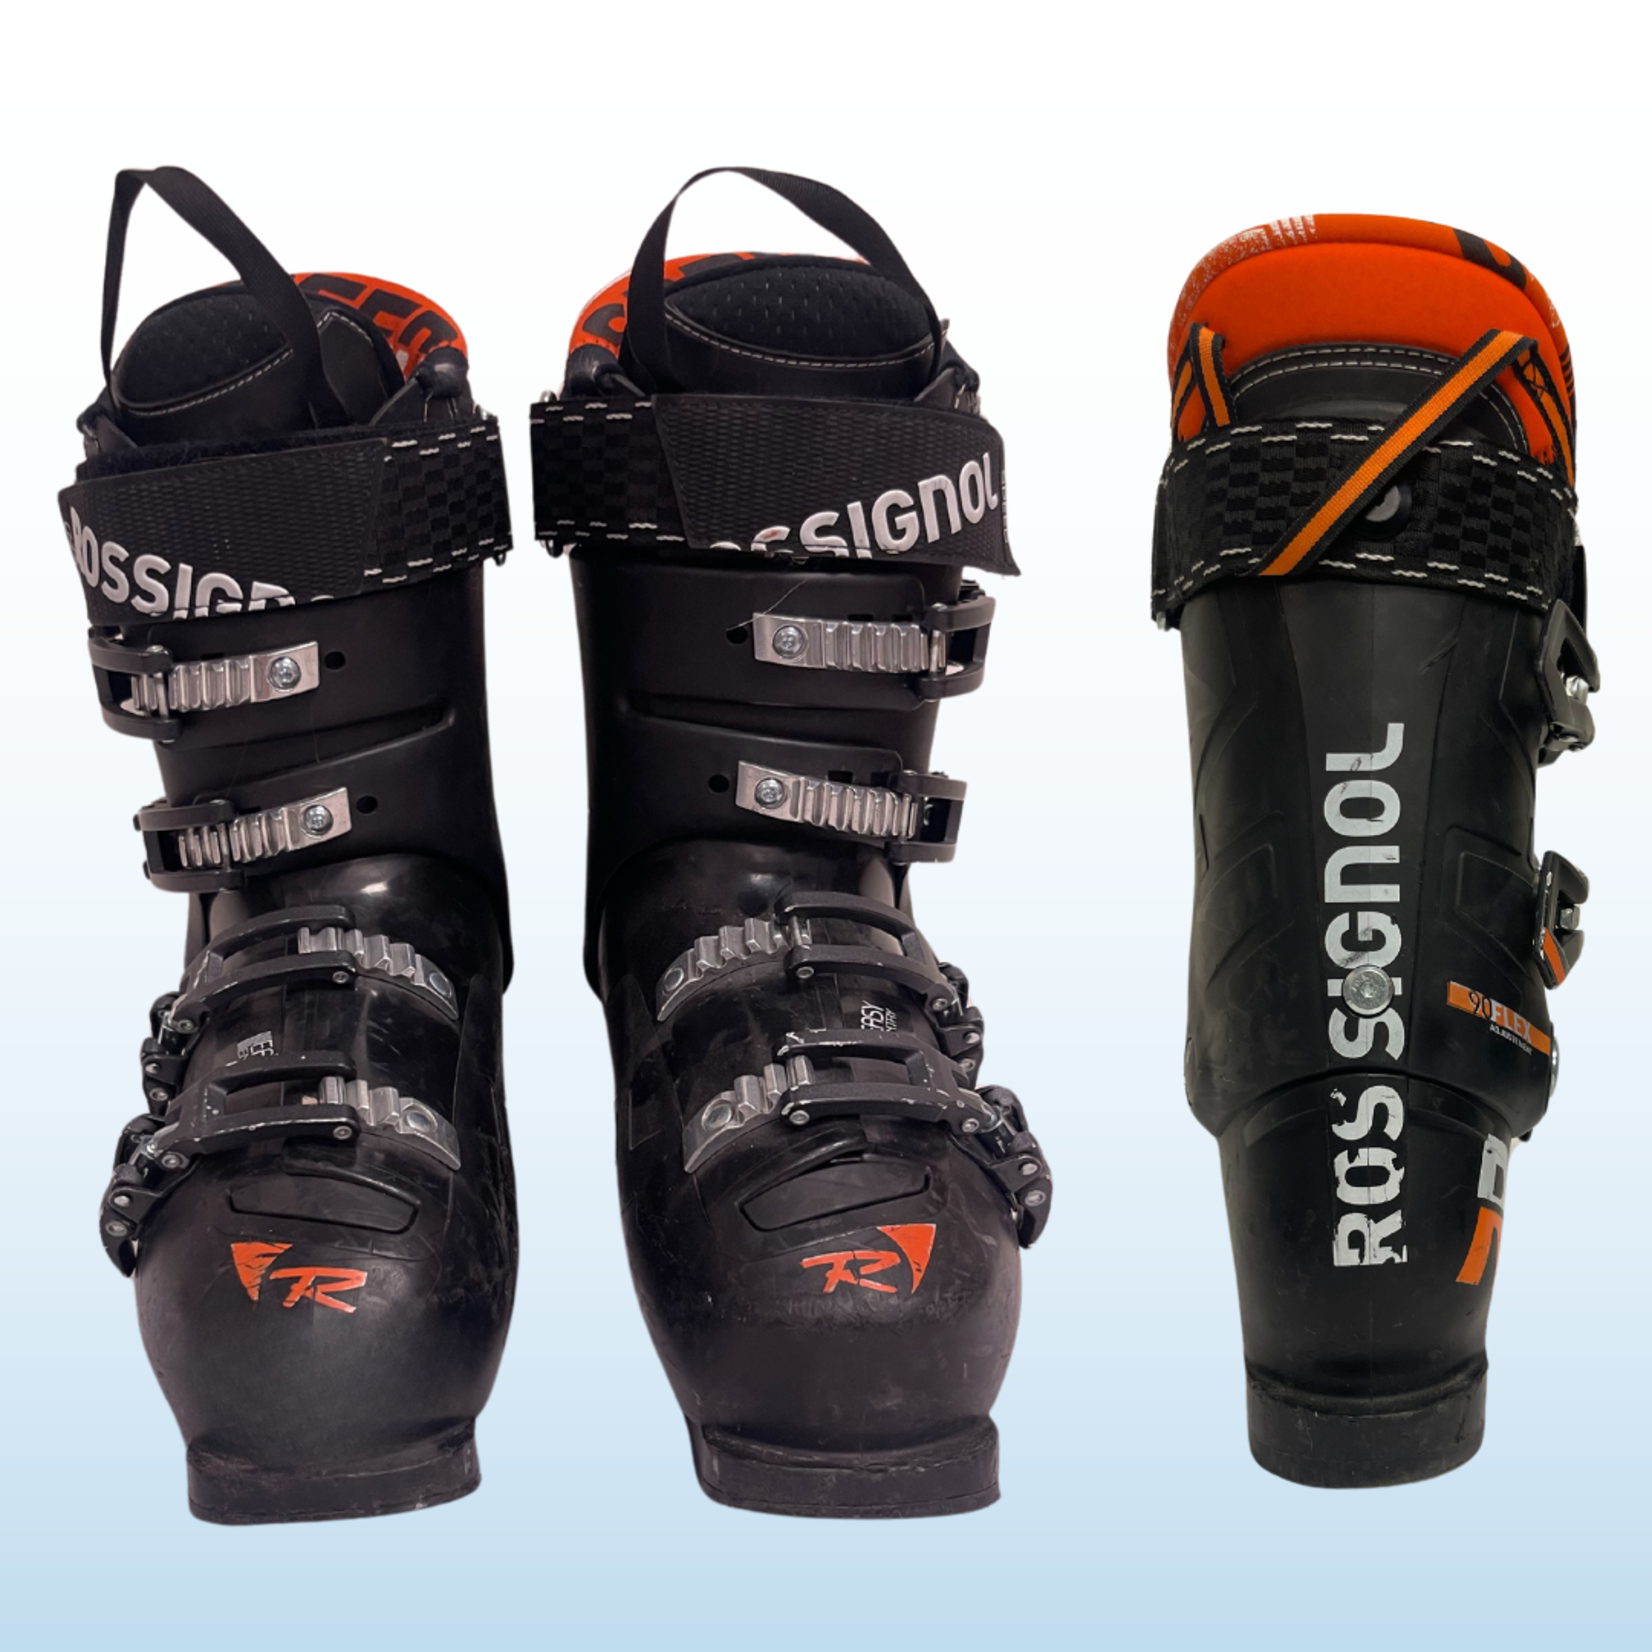 Rossignol Rossignol Speed 90 Ski Boots, Size 24.5